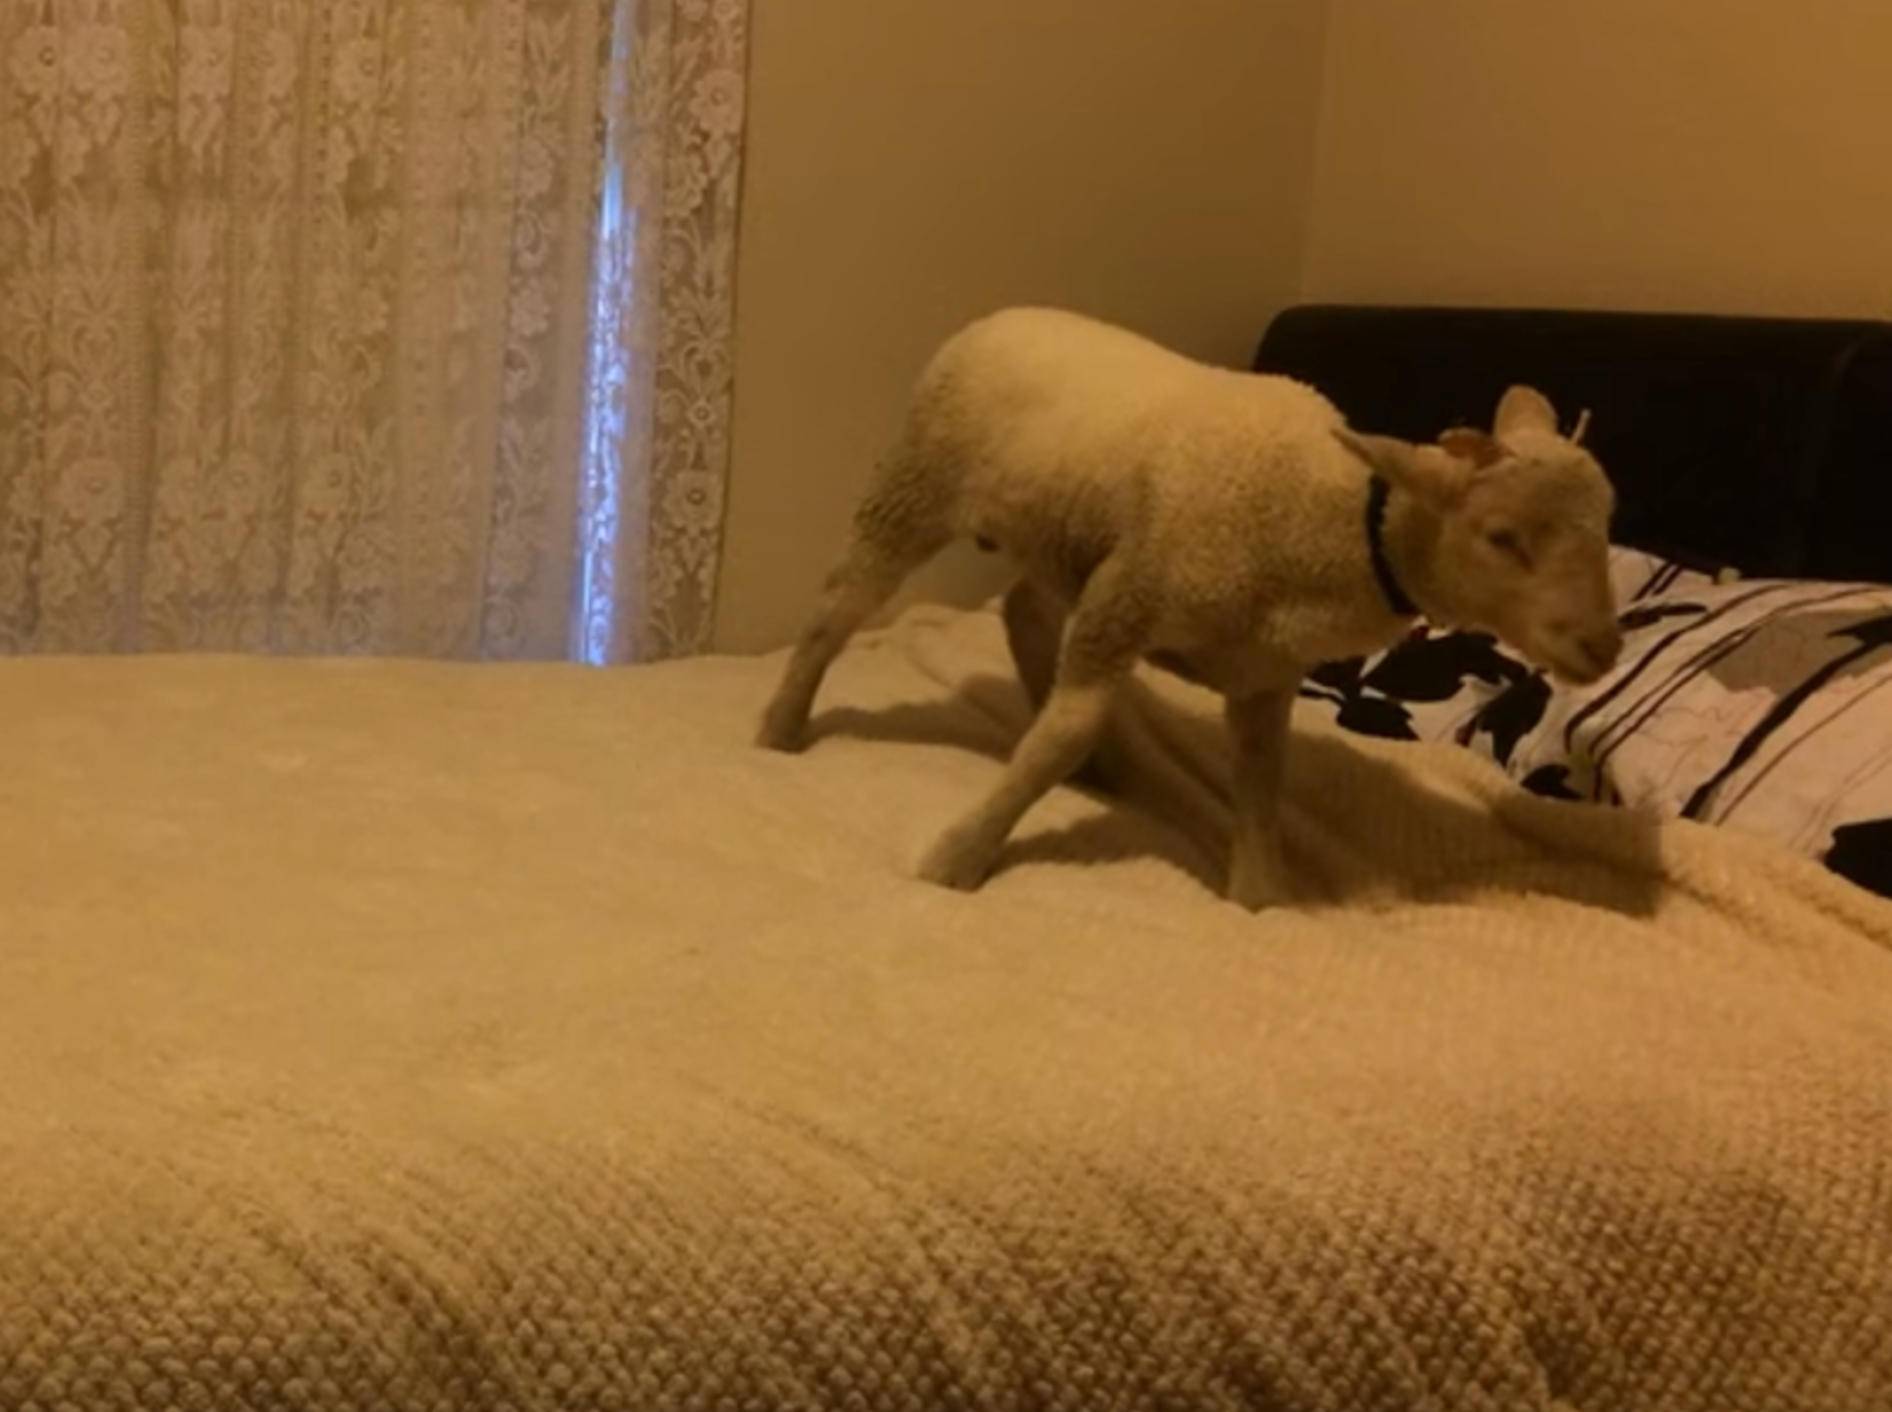 Schlaues Lamm: "Ich hüpfe so gerne auf dem Bett!" – Bild: YouTube / Shannen Hussein